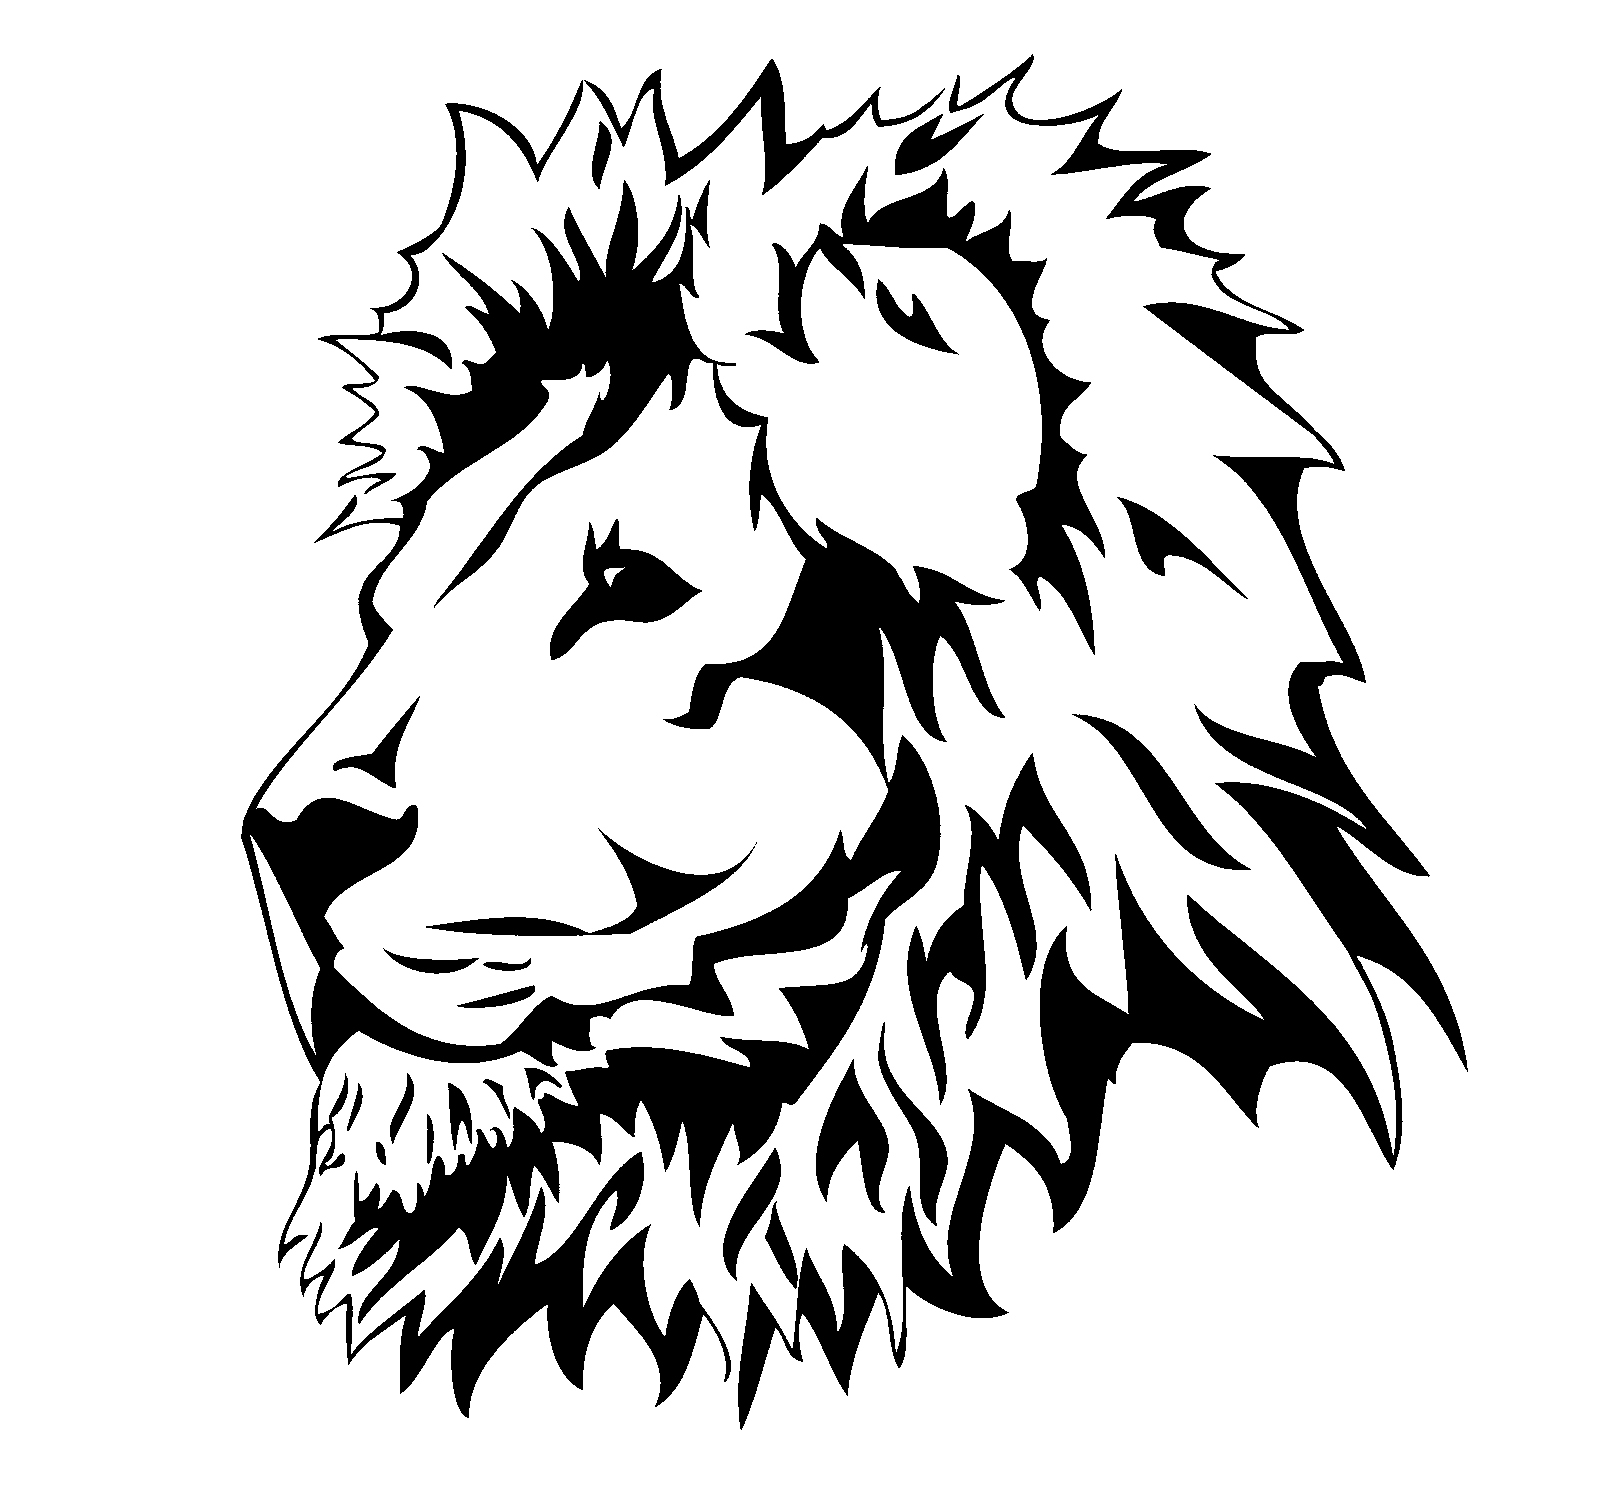 Lion Head Art - ClipArt Best